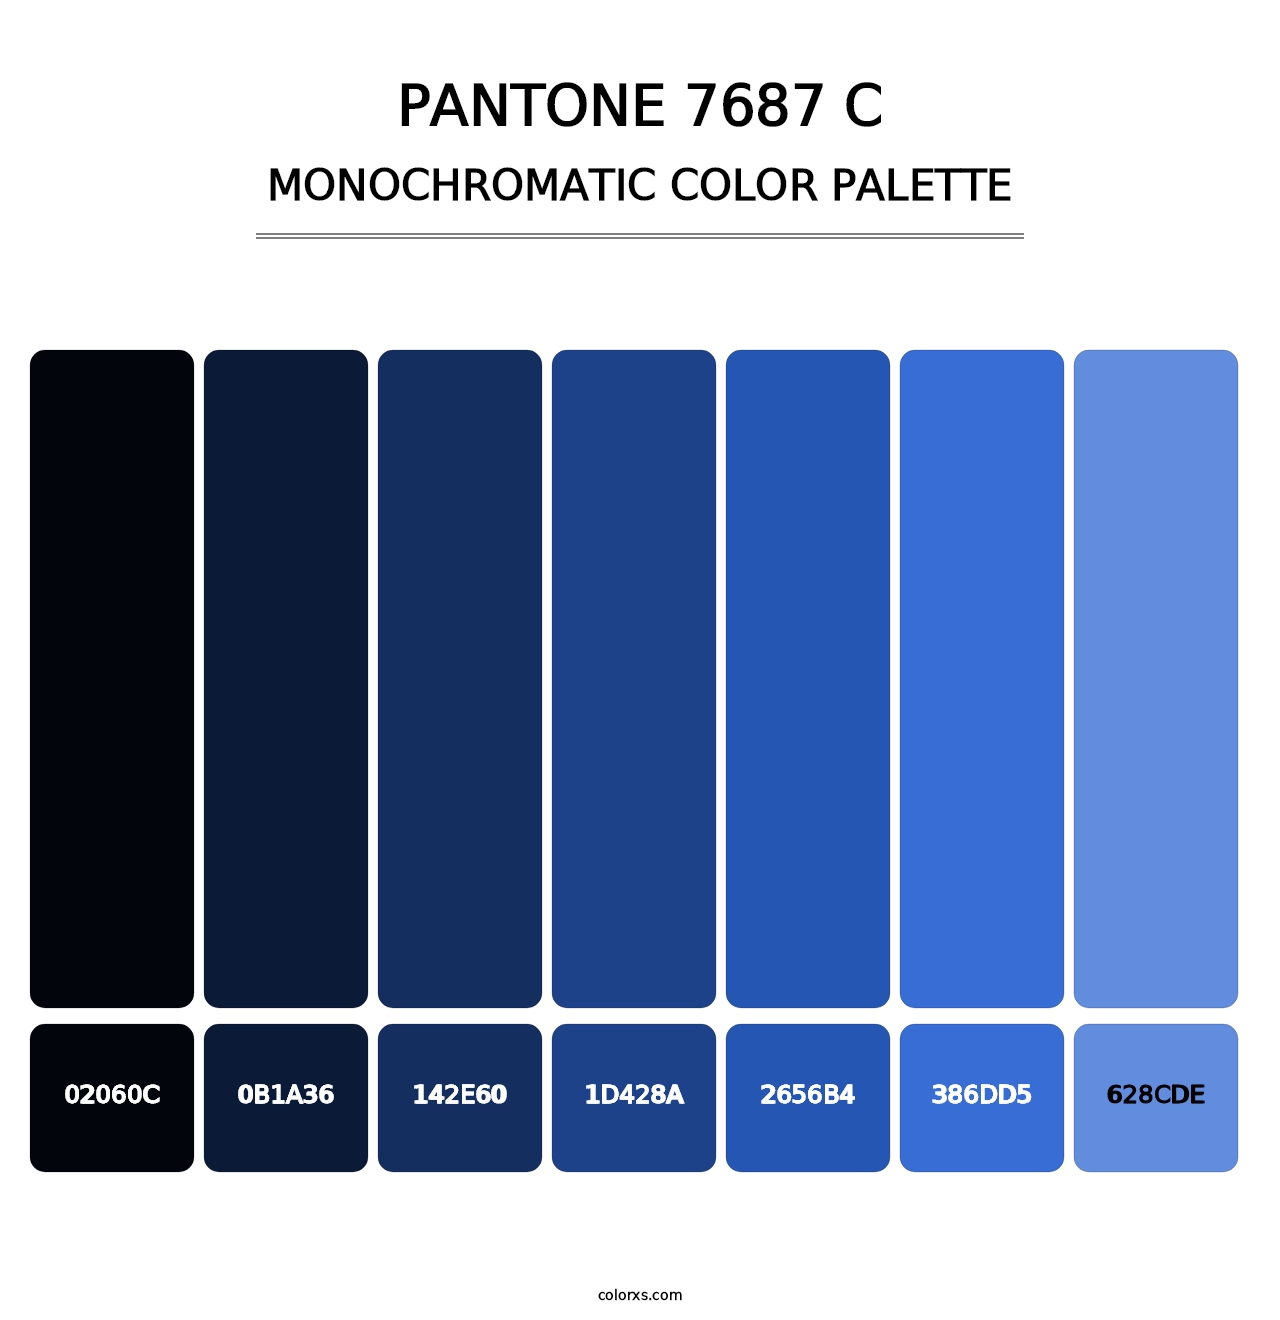 PANTONE 7687 C - Monochromatic Color Palette